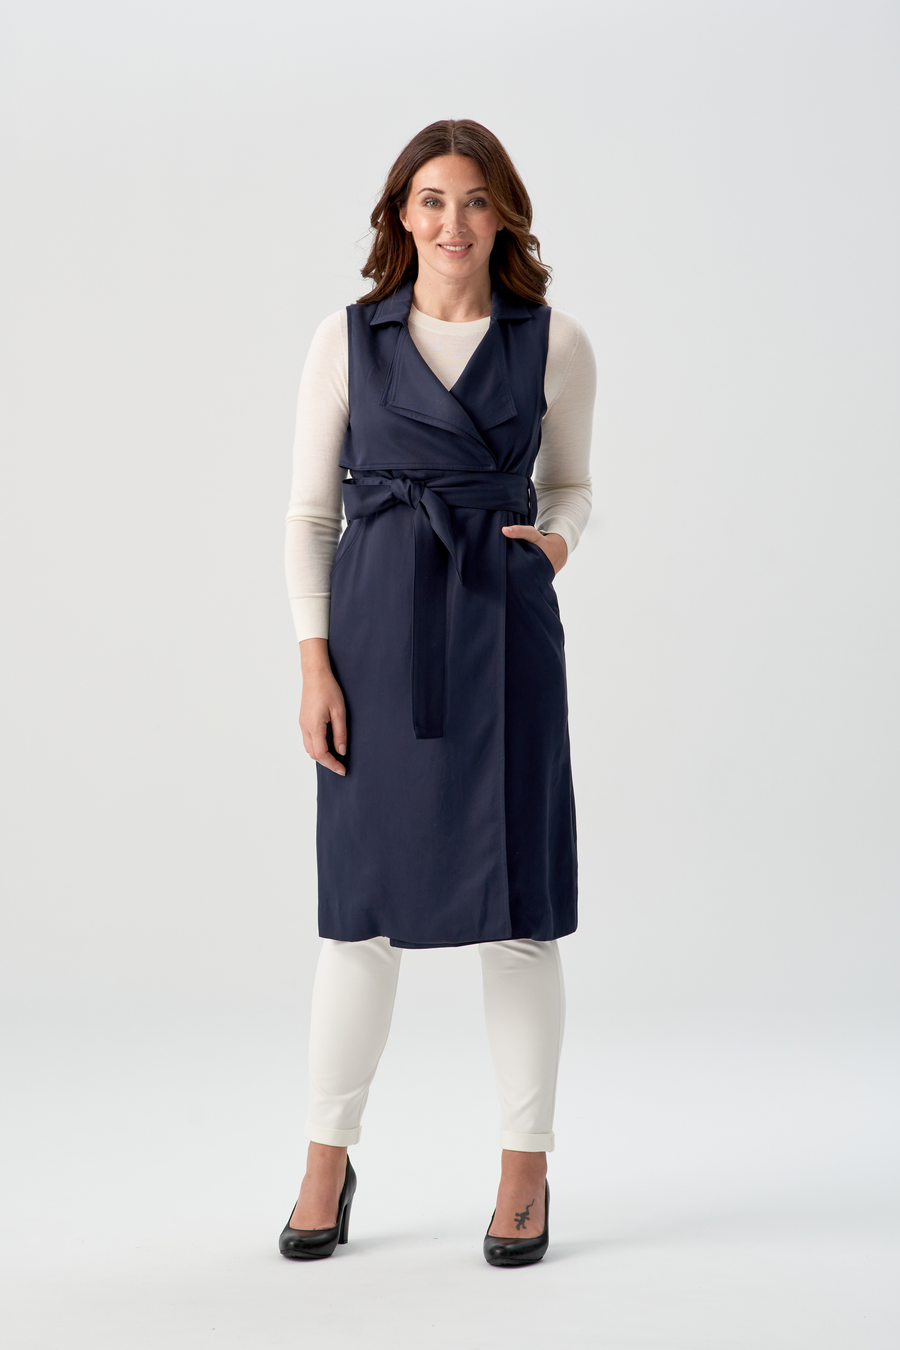 woman wearing navy blue vest